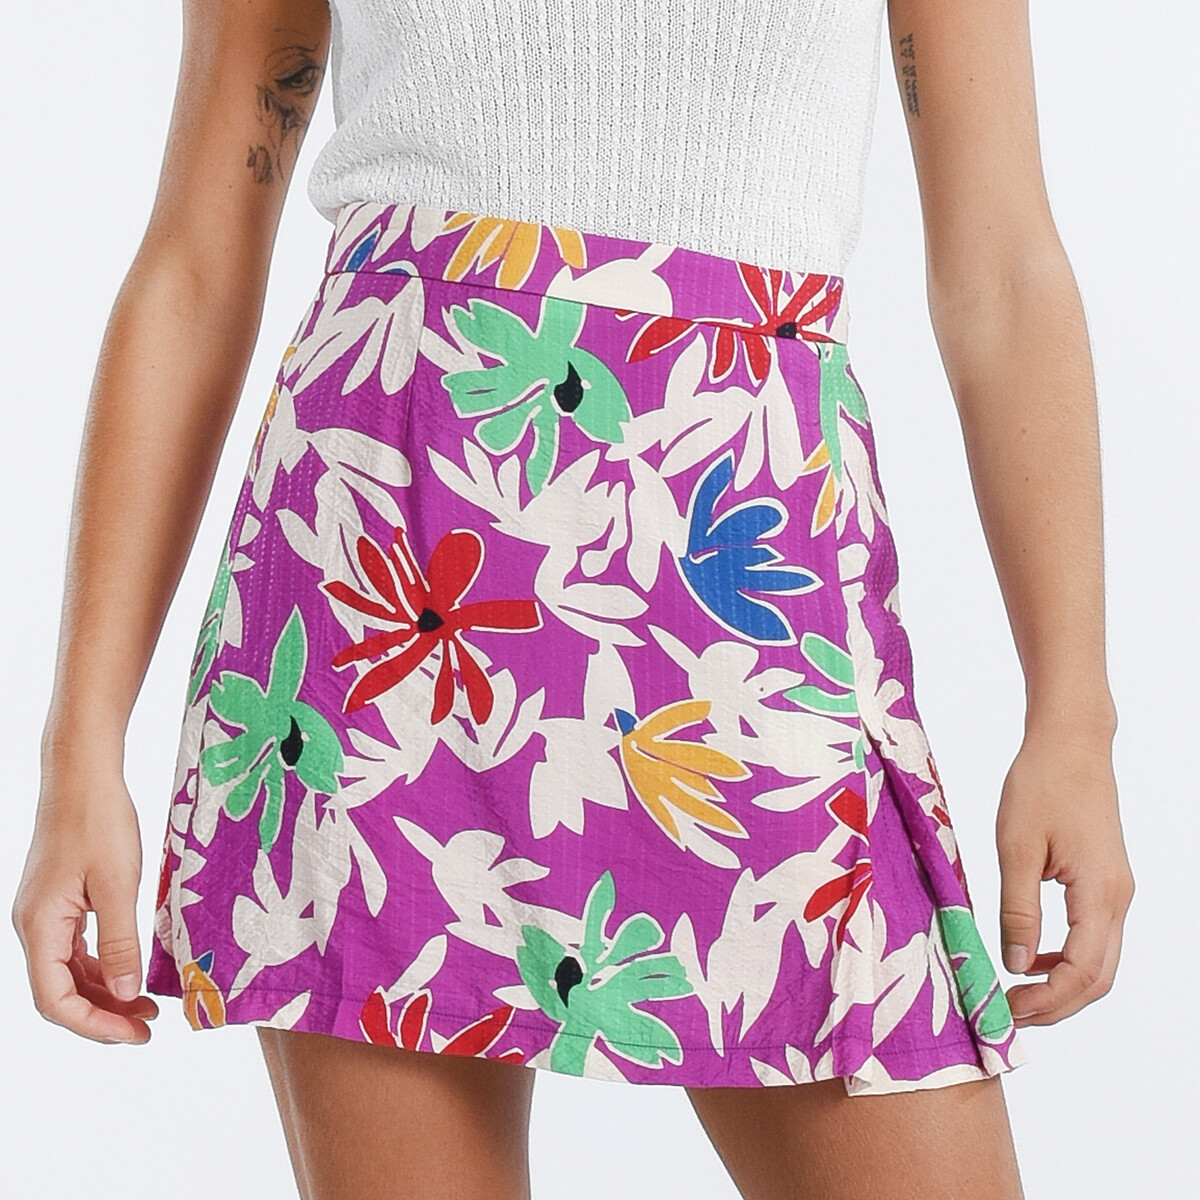 Юбка короткая с цветочным принтом XS фиолетовый юбка короткая расклешенная с цветочным рисунком xs разноцветный